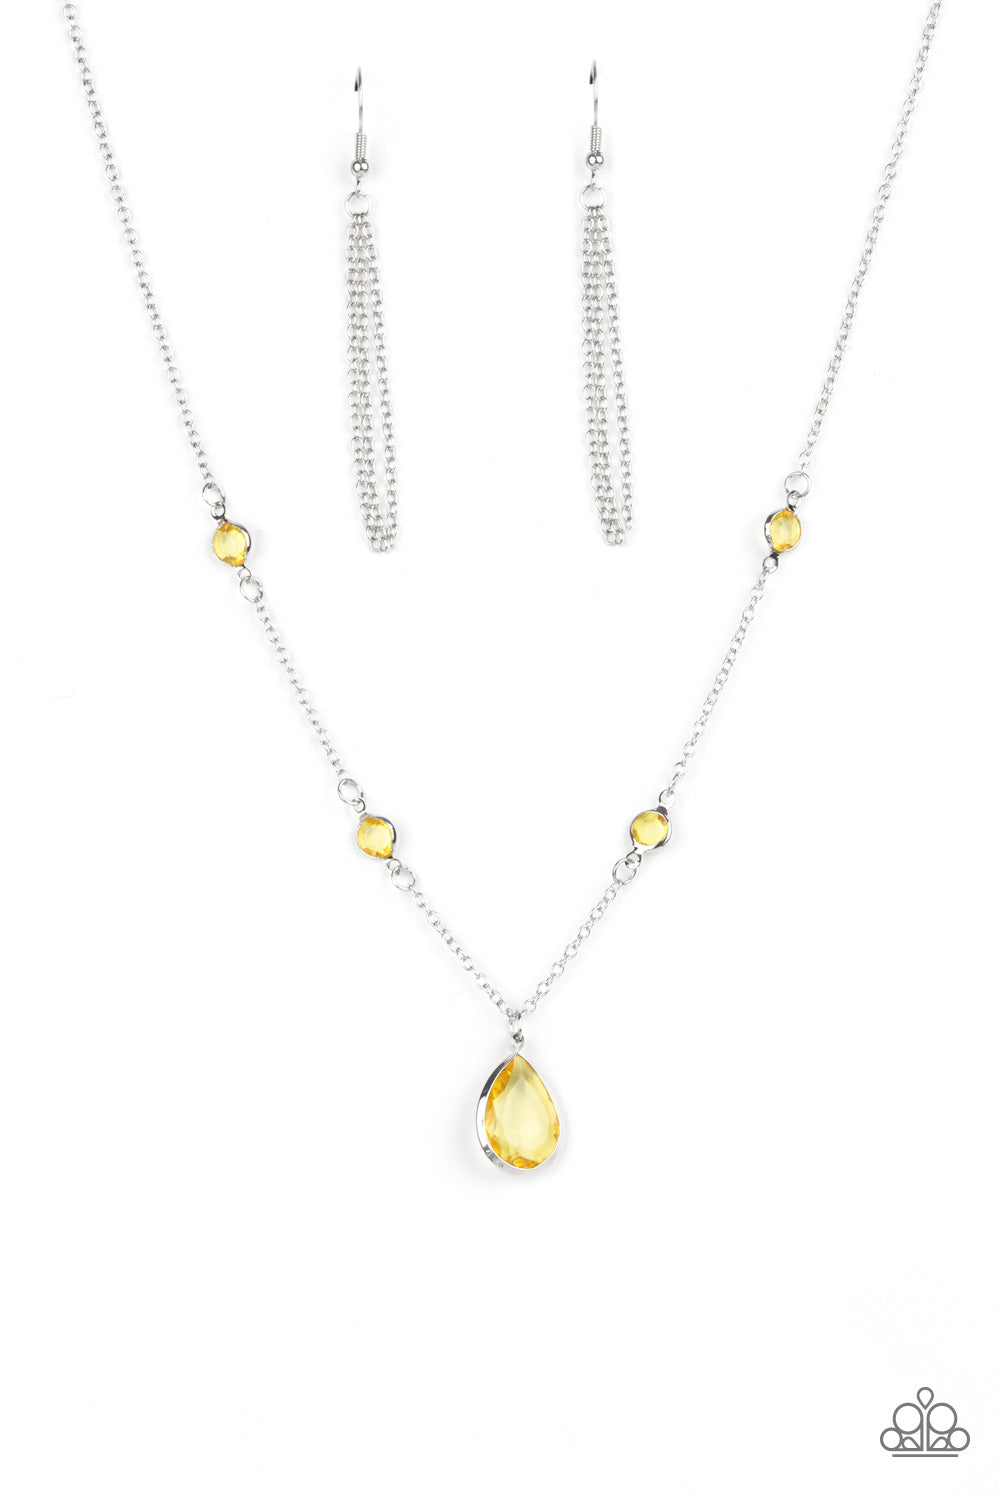 Romantic Rendezvous - Yellow Necklace Set - Princess Glam Shop